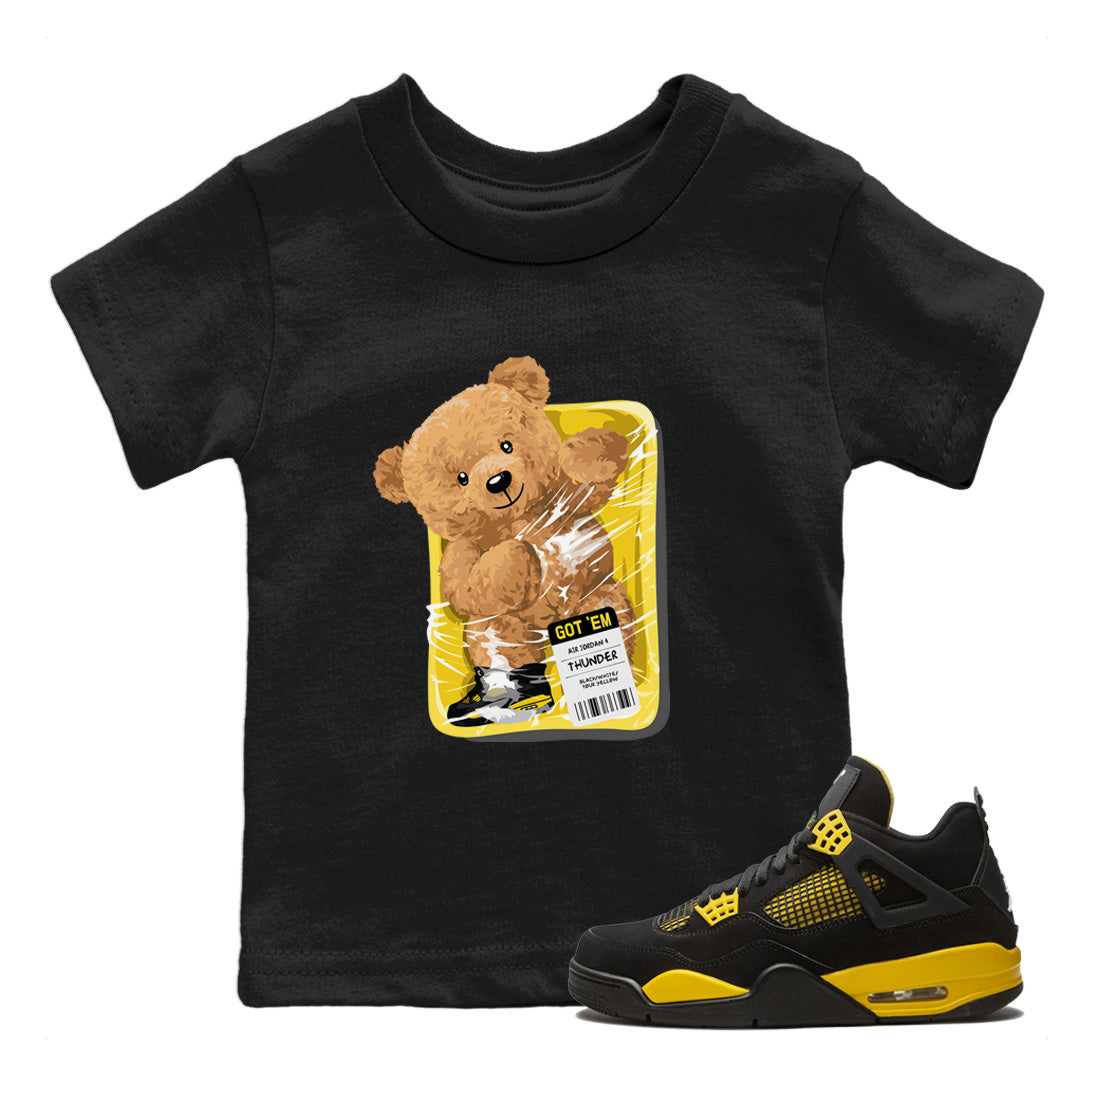 Air Jordan 4 Thunder Sneaker Match Tees Packaged Bear Streetwear Sneaker Shirt Air Jordan 4 Retro Thunder Sneaker Release Tees Kids Shirts Black 1